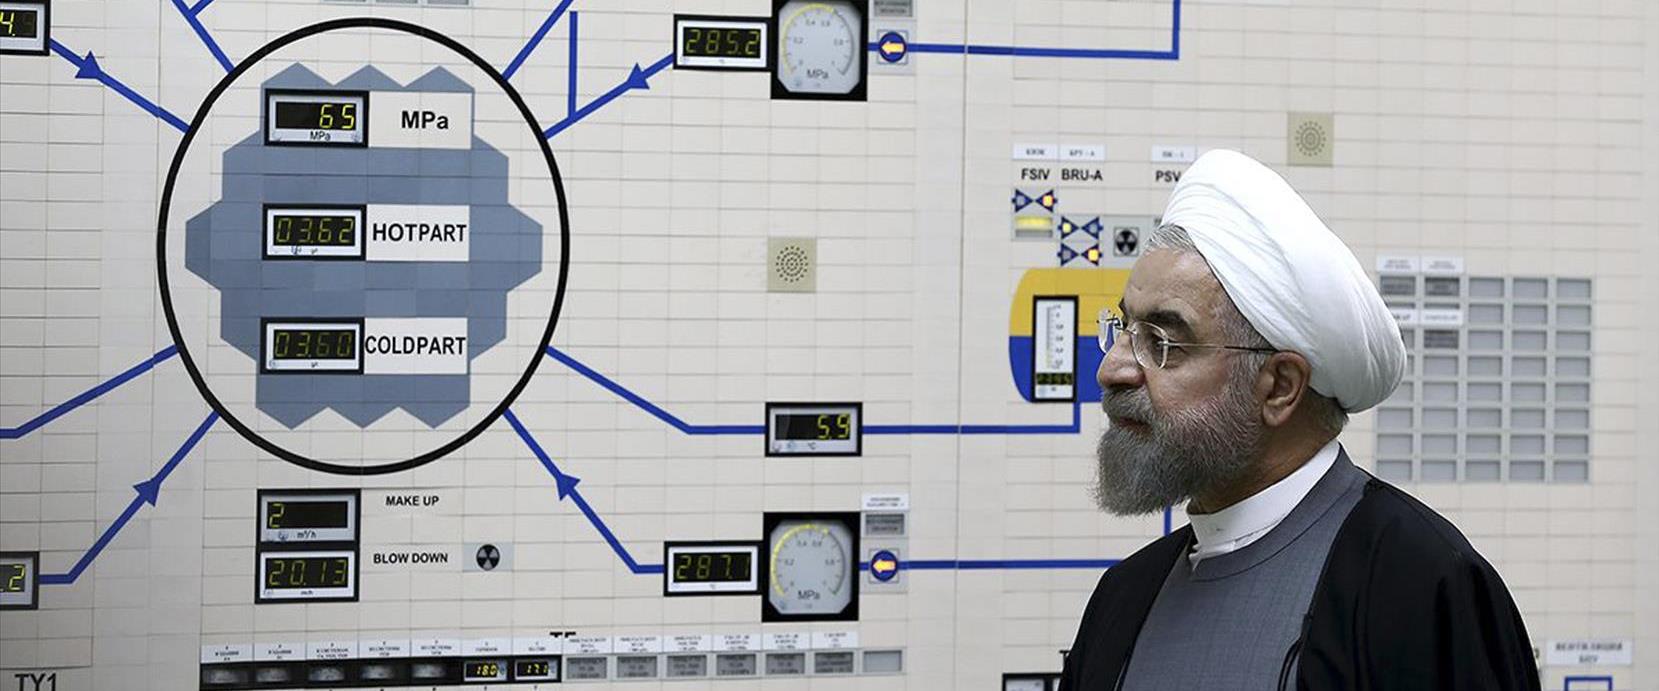 נשיא איראן חסן רוחאני מבקר במתקן הגרעיני בבושהר, ב